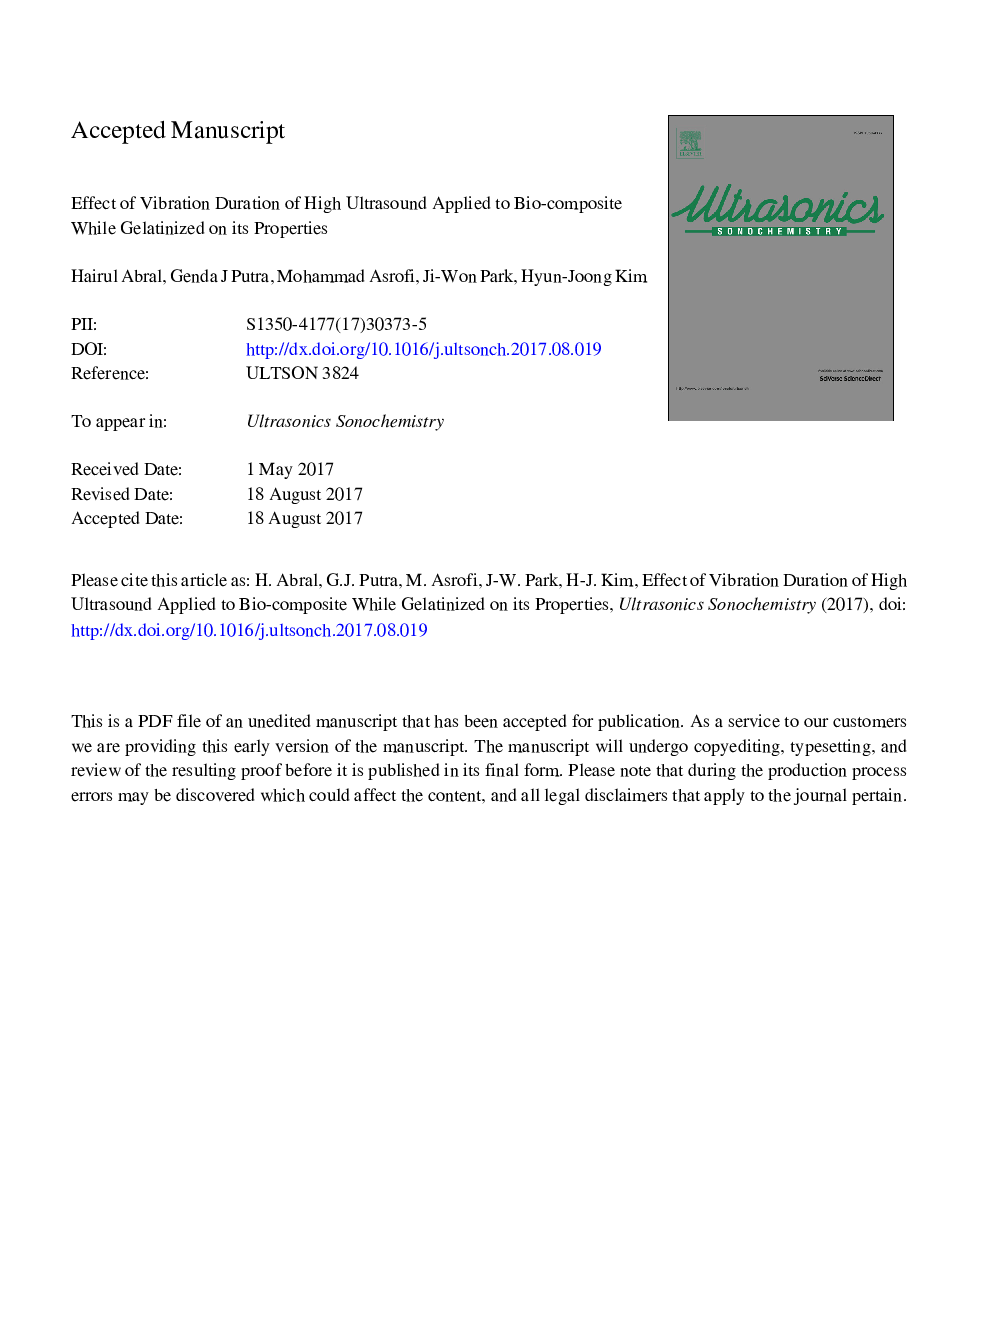 اثر طول ارتعاش اولتراسوند بالا اعمال شده به زیست کامپوزیت در حالی که ژلاتینی بر خواص آن است